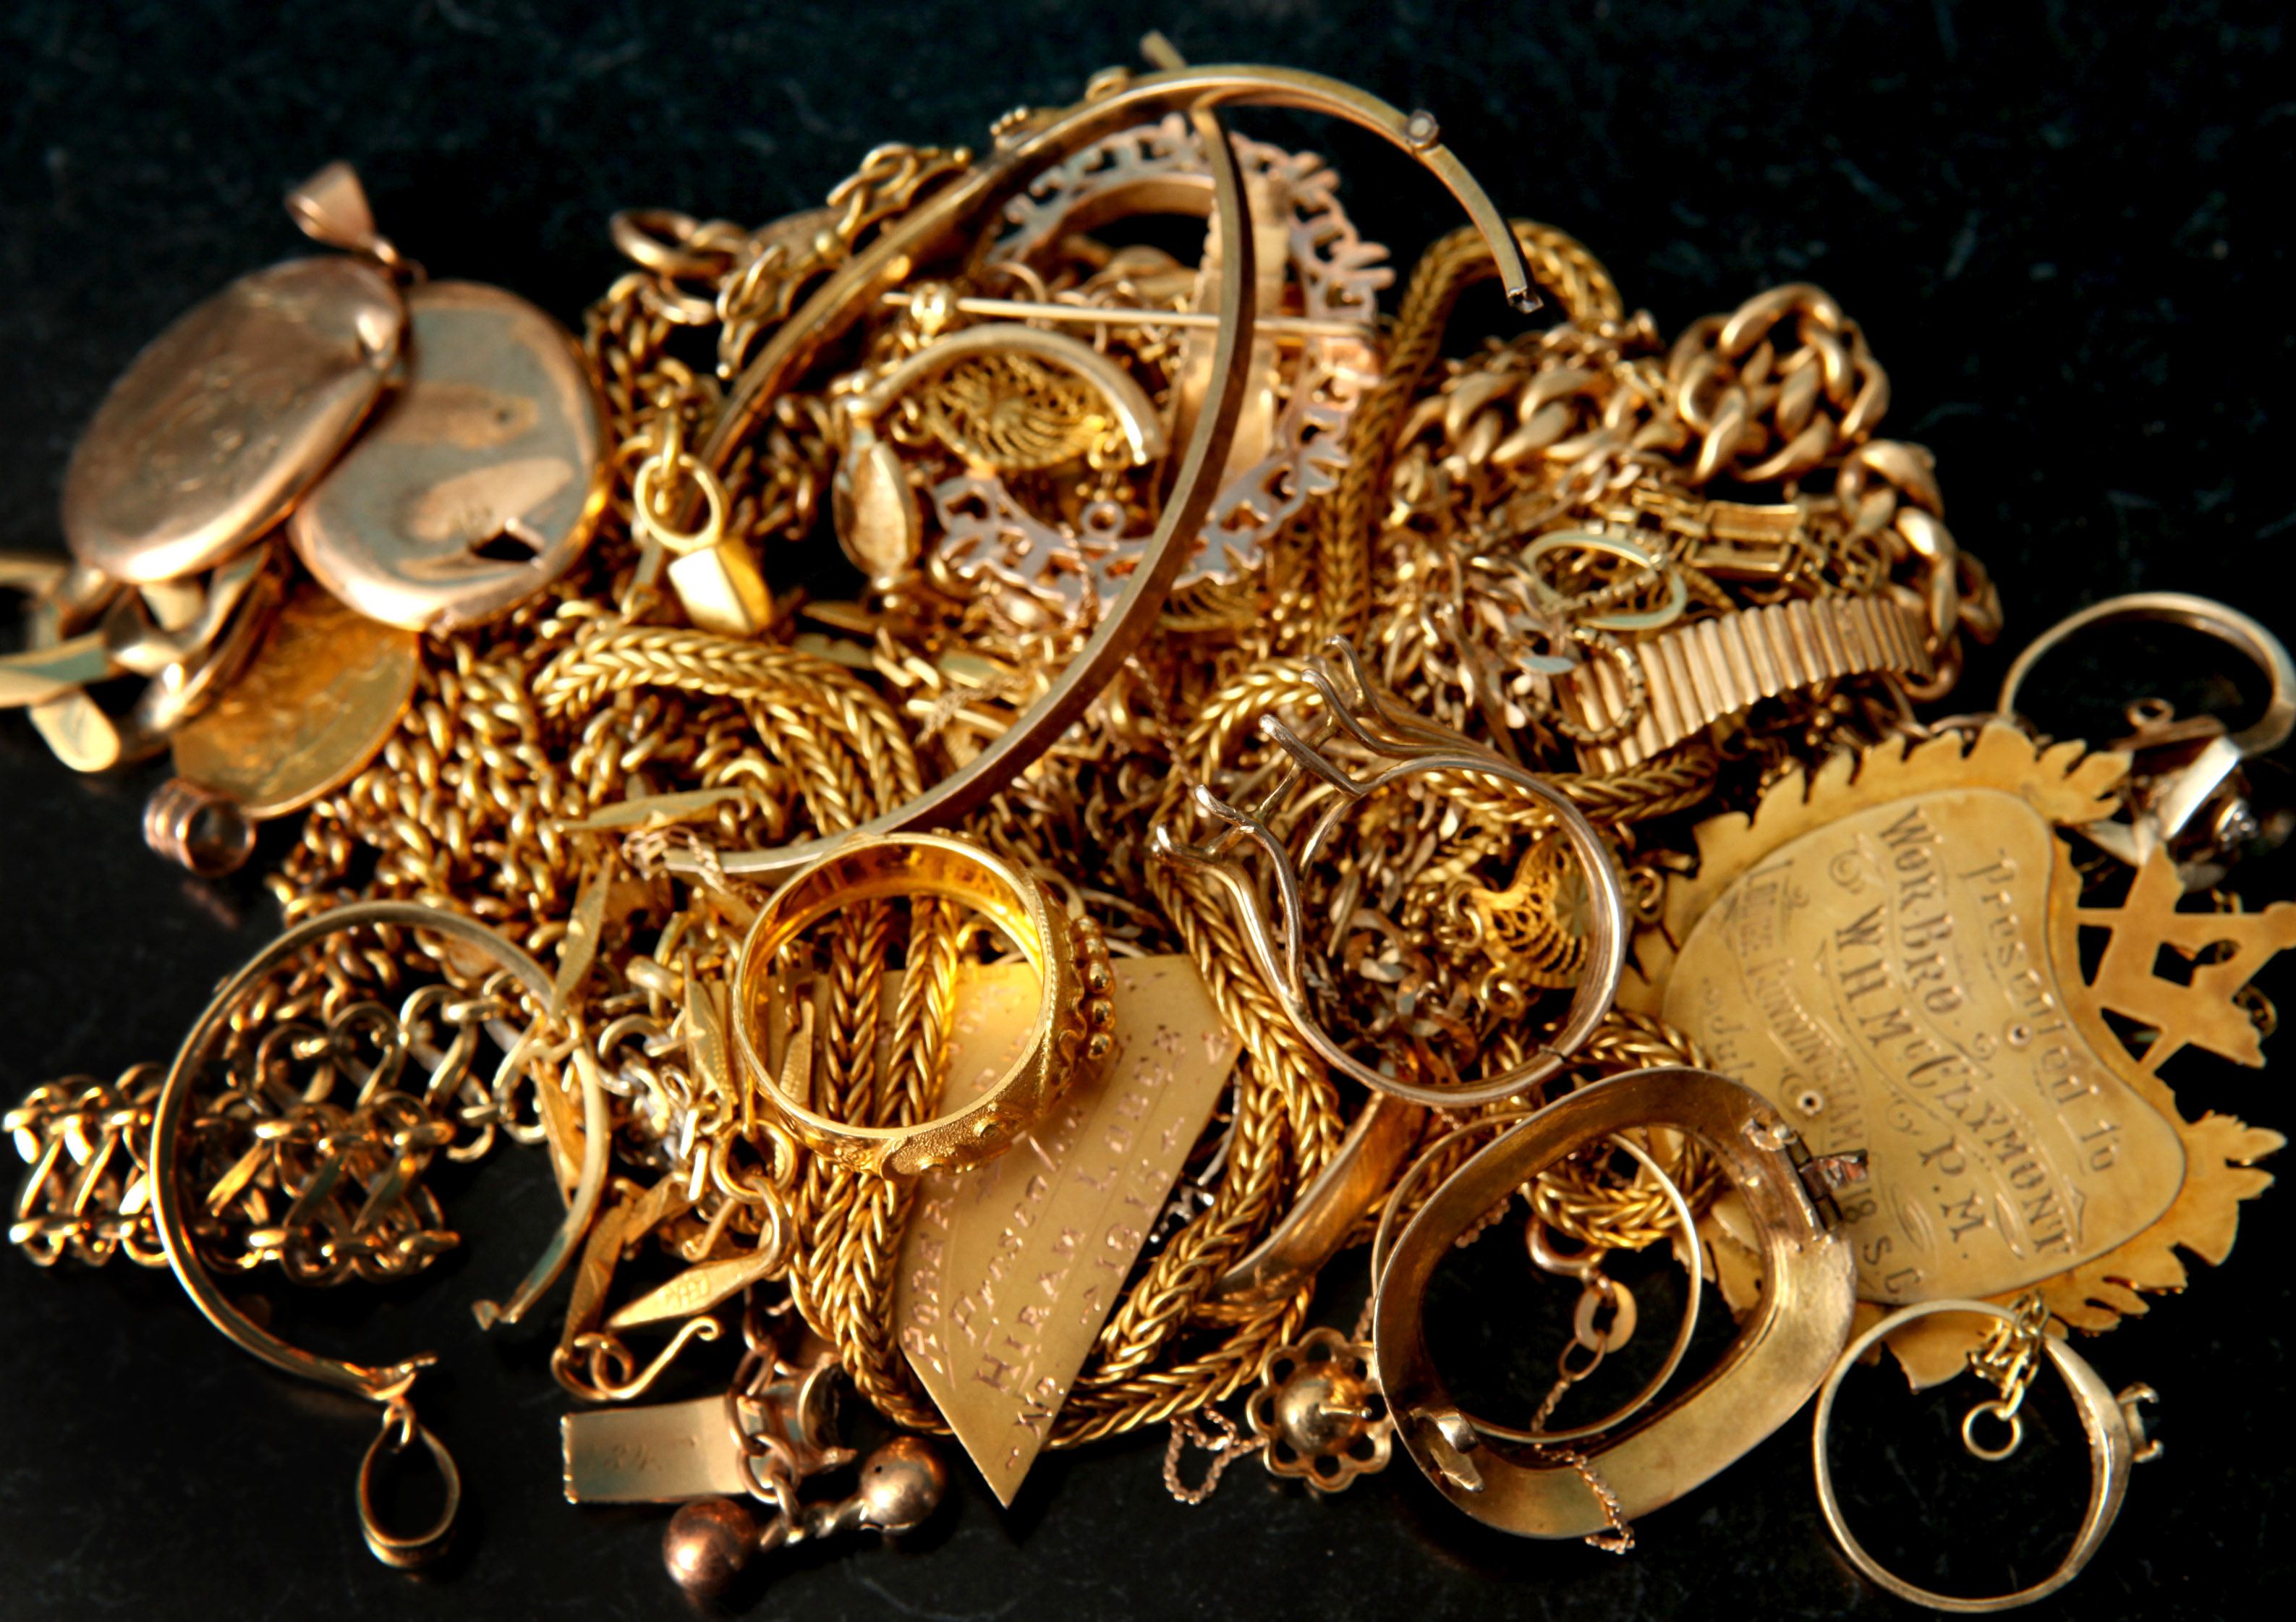  کشف 4.5 کیلوگرم طلای قاچاق در گمرک بازرگان